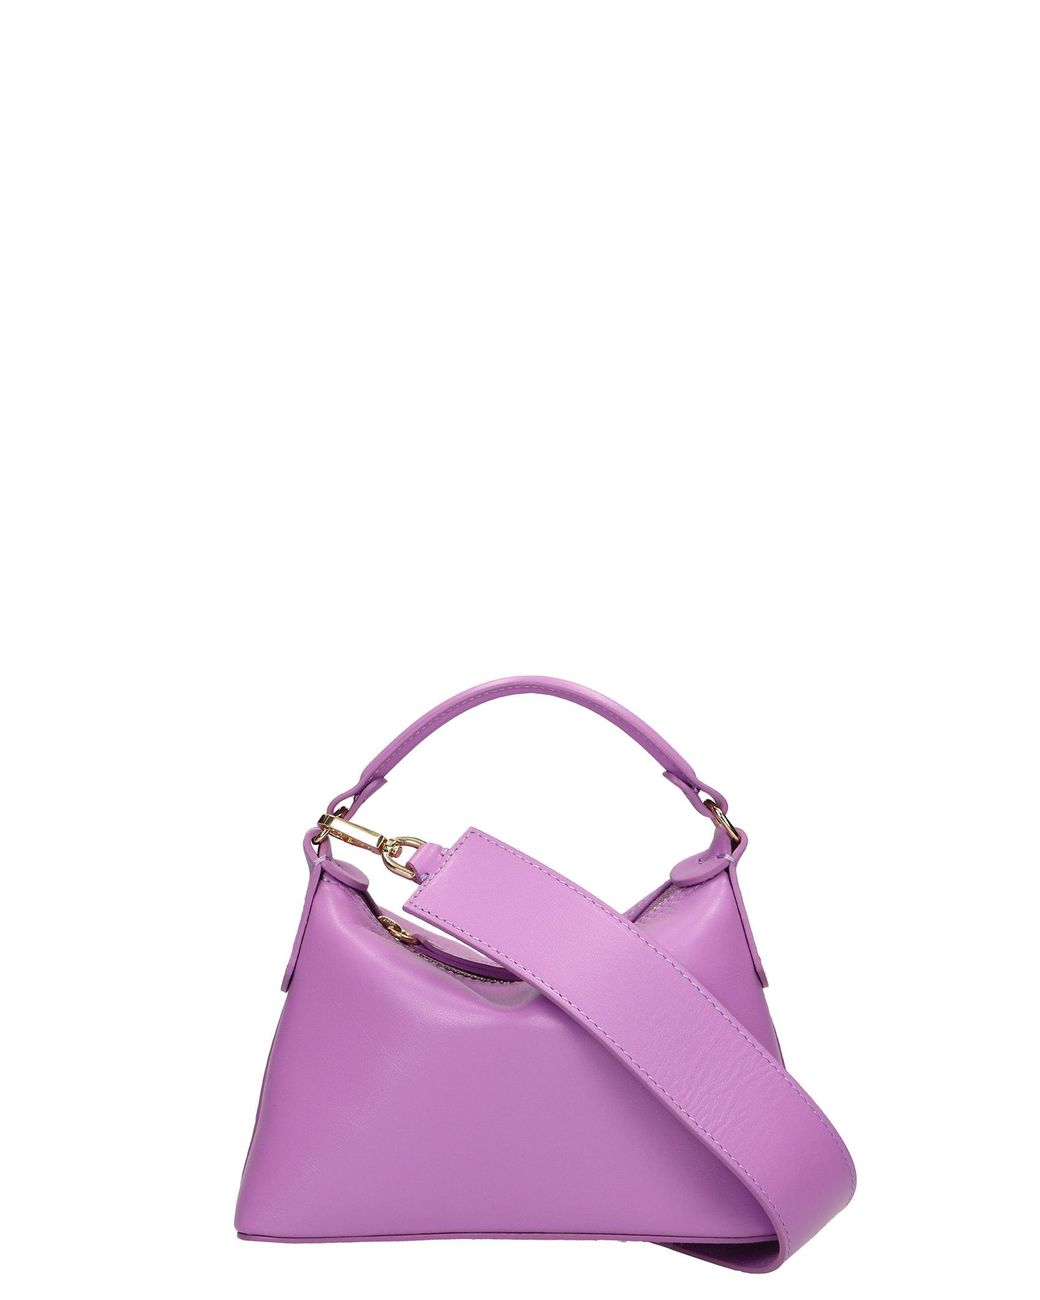 Liu Jo Mini Hobo Shoulder Bag In Leather in Purple | Lyst UK